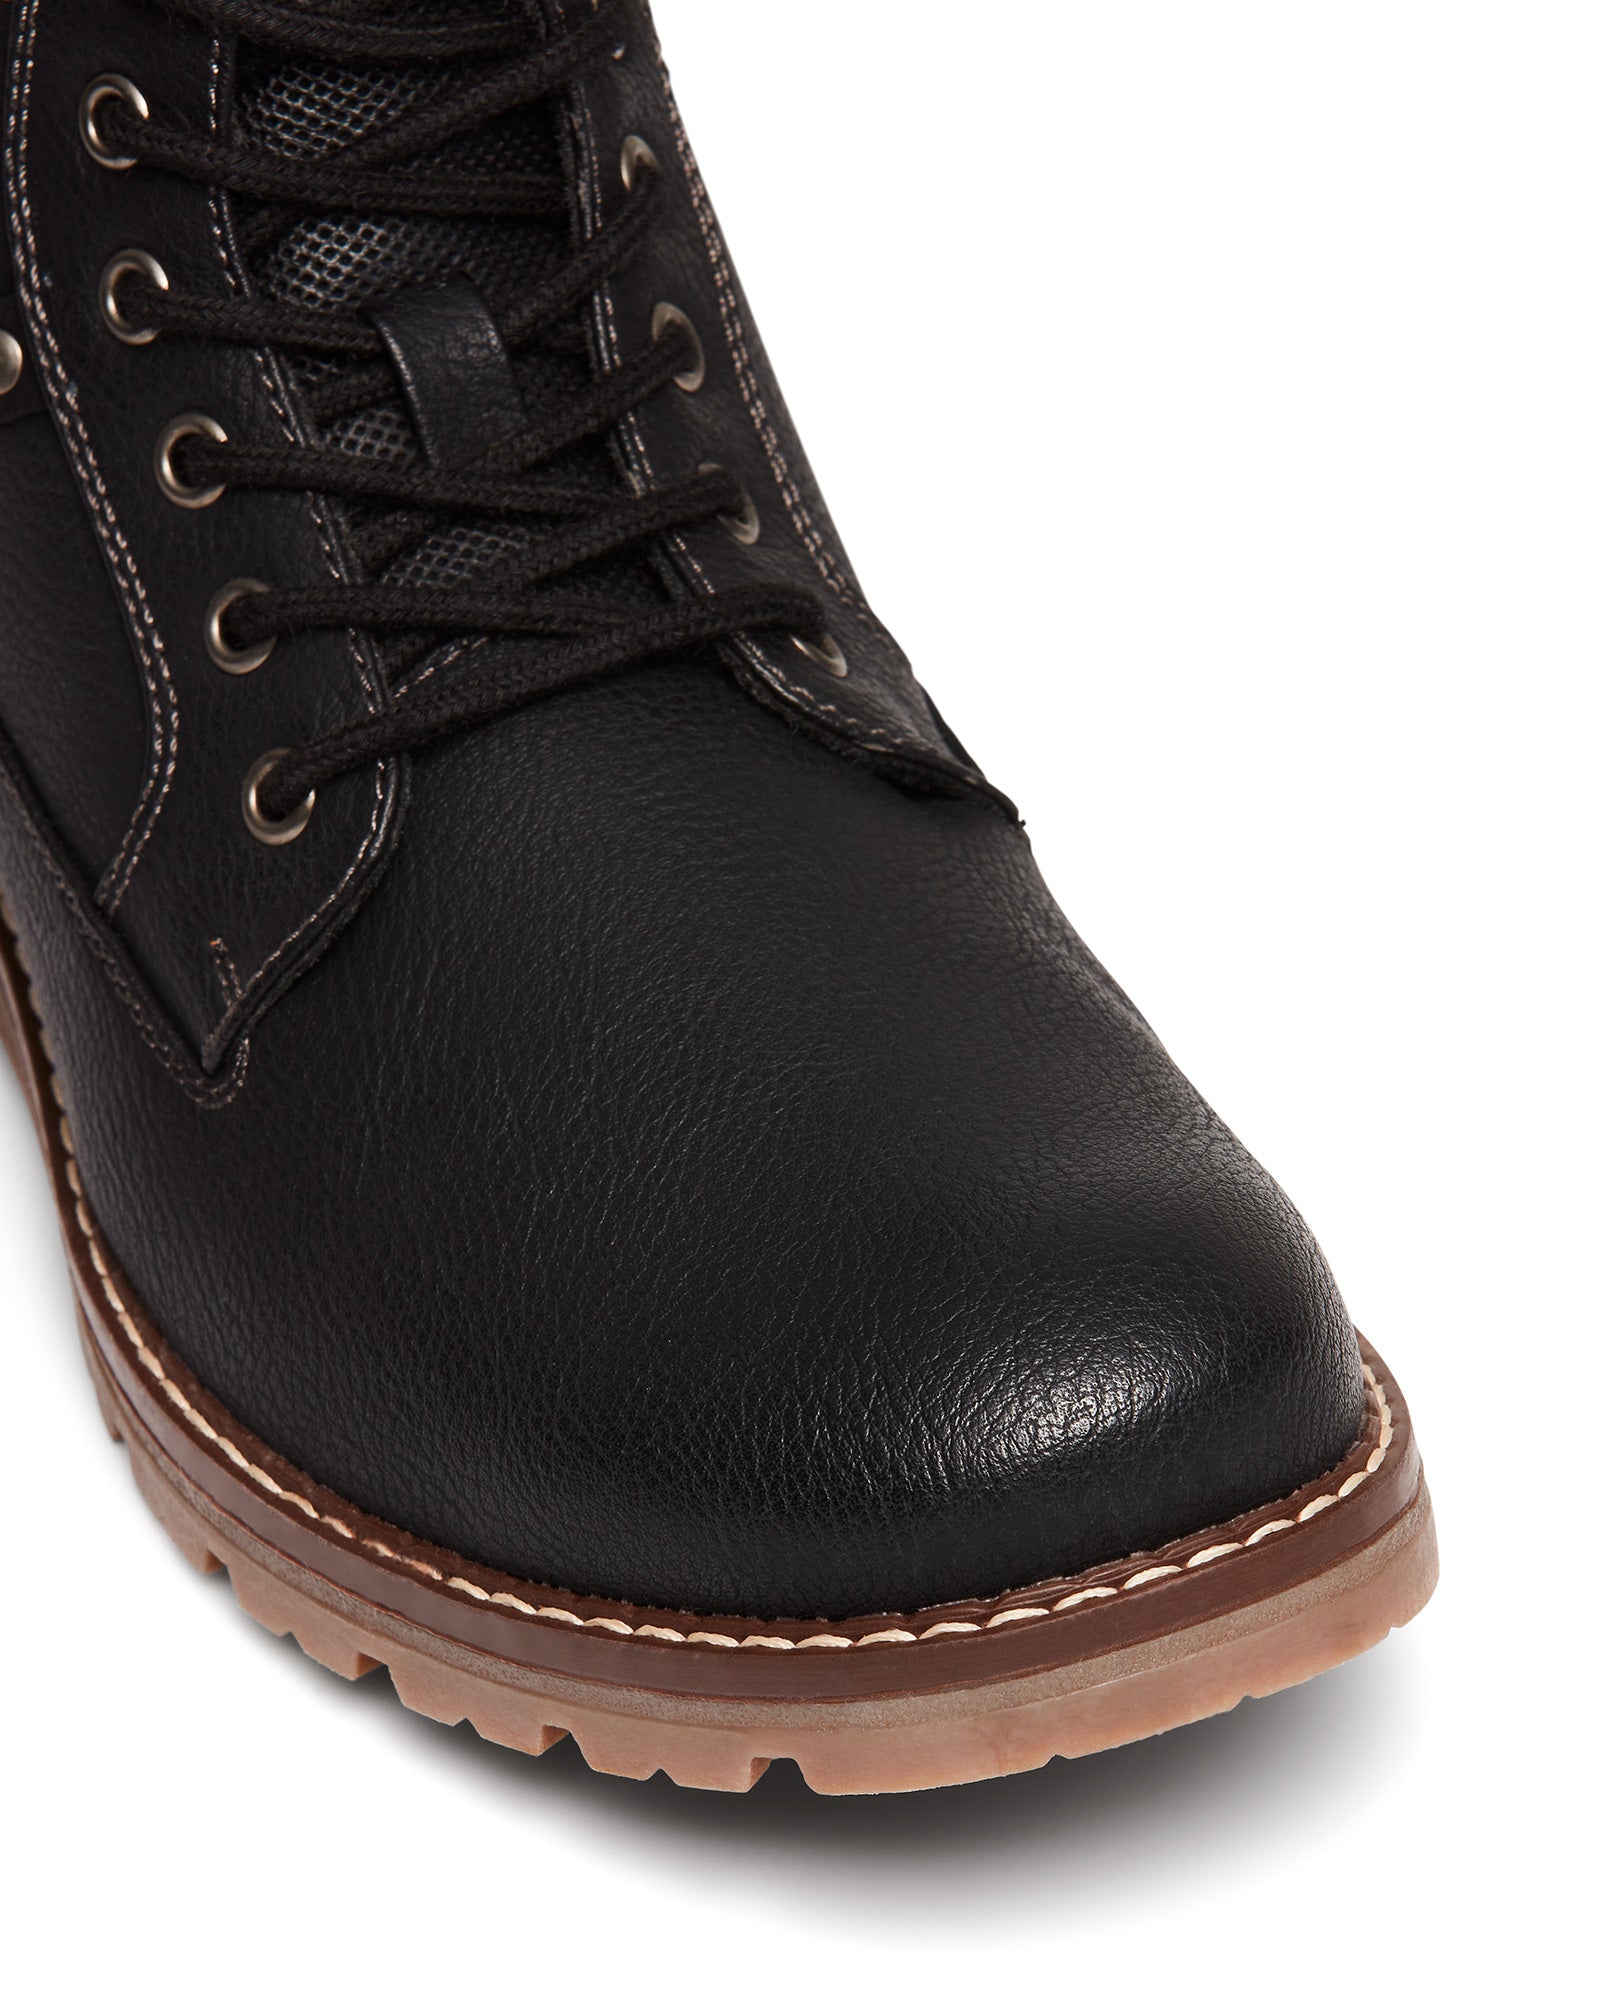 Uncut Shoes Napier Black | Men's Boot | Combat Boot | Lace Up